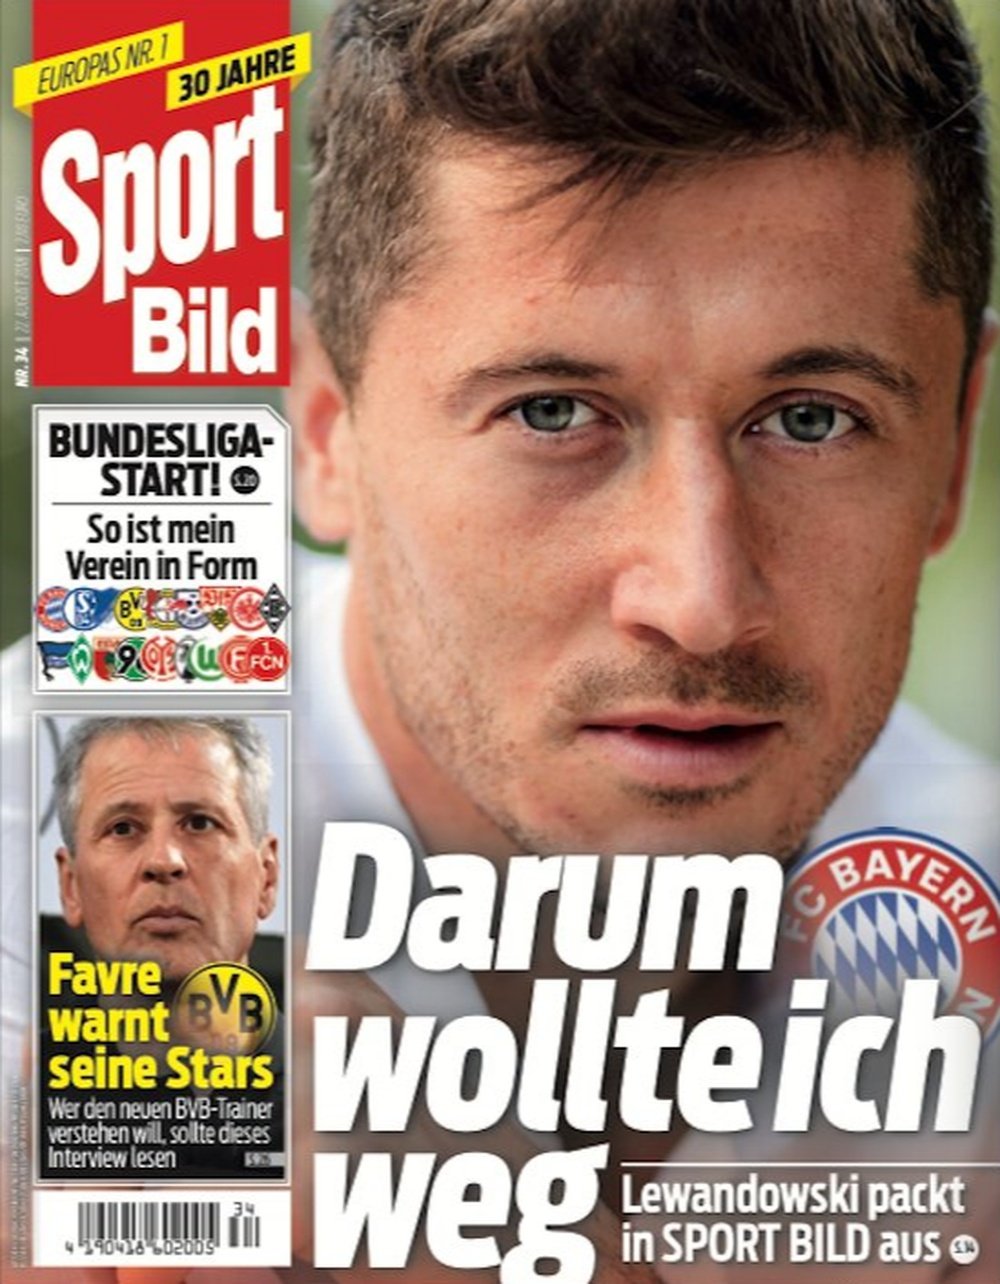 Capa do jornal 'Sport Bild' de 22-08-2018 com Lewandowski. SportBild